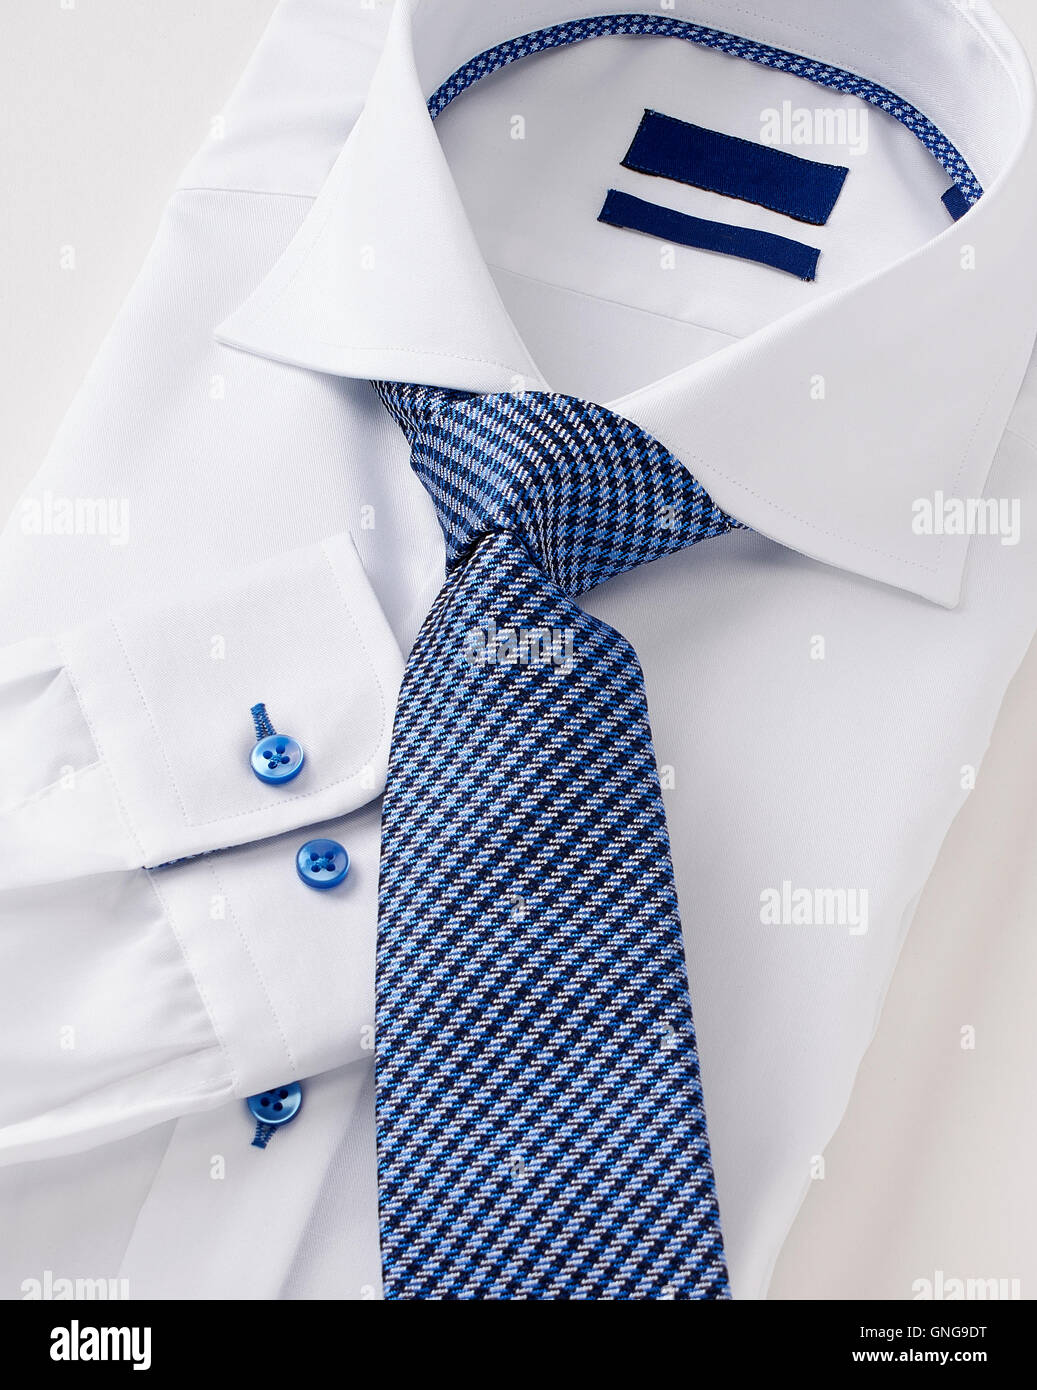 Männer Hemd mit Krawatte auf weiße Kleidung. Stockfoto